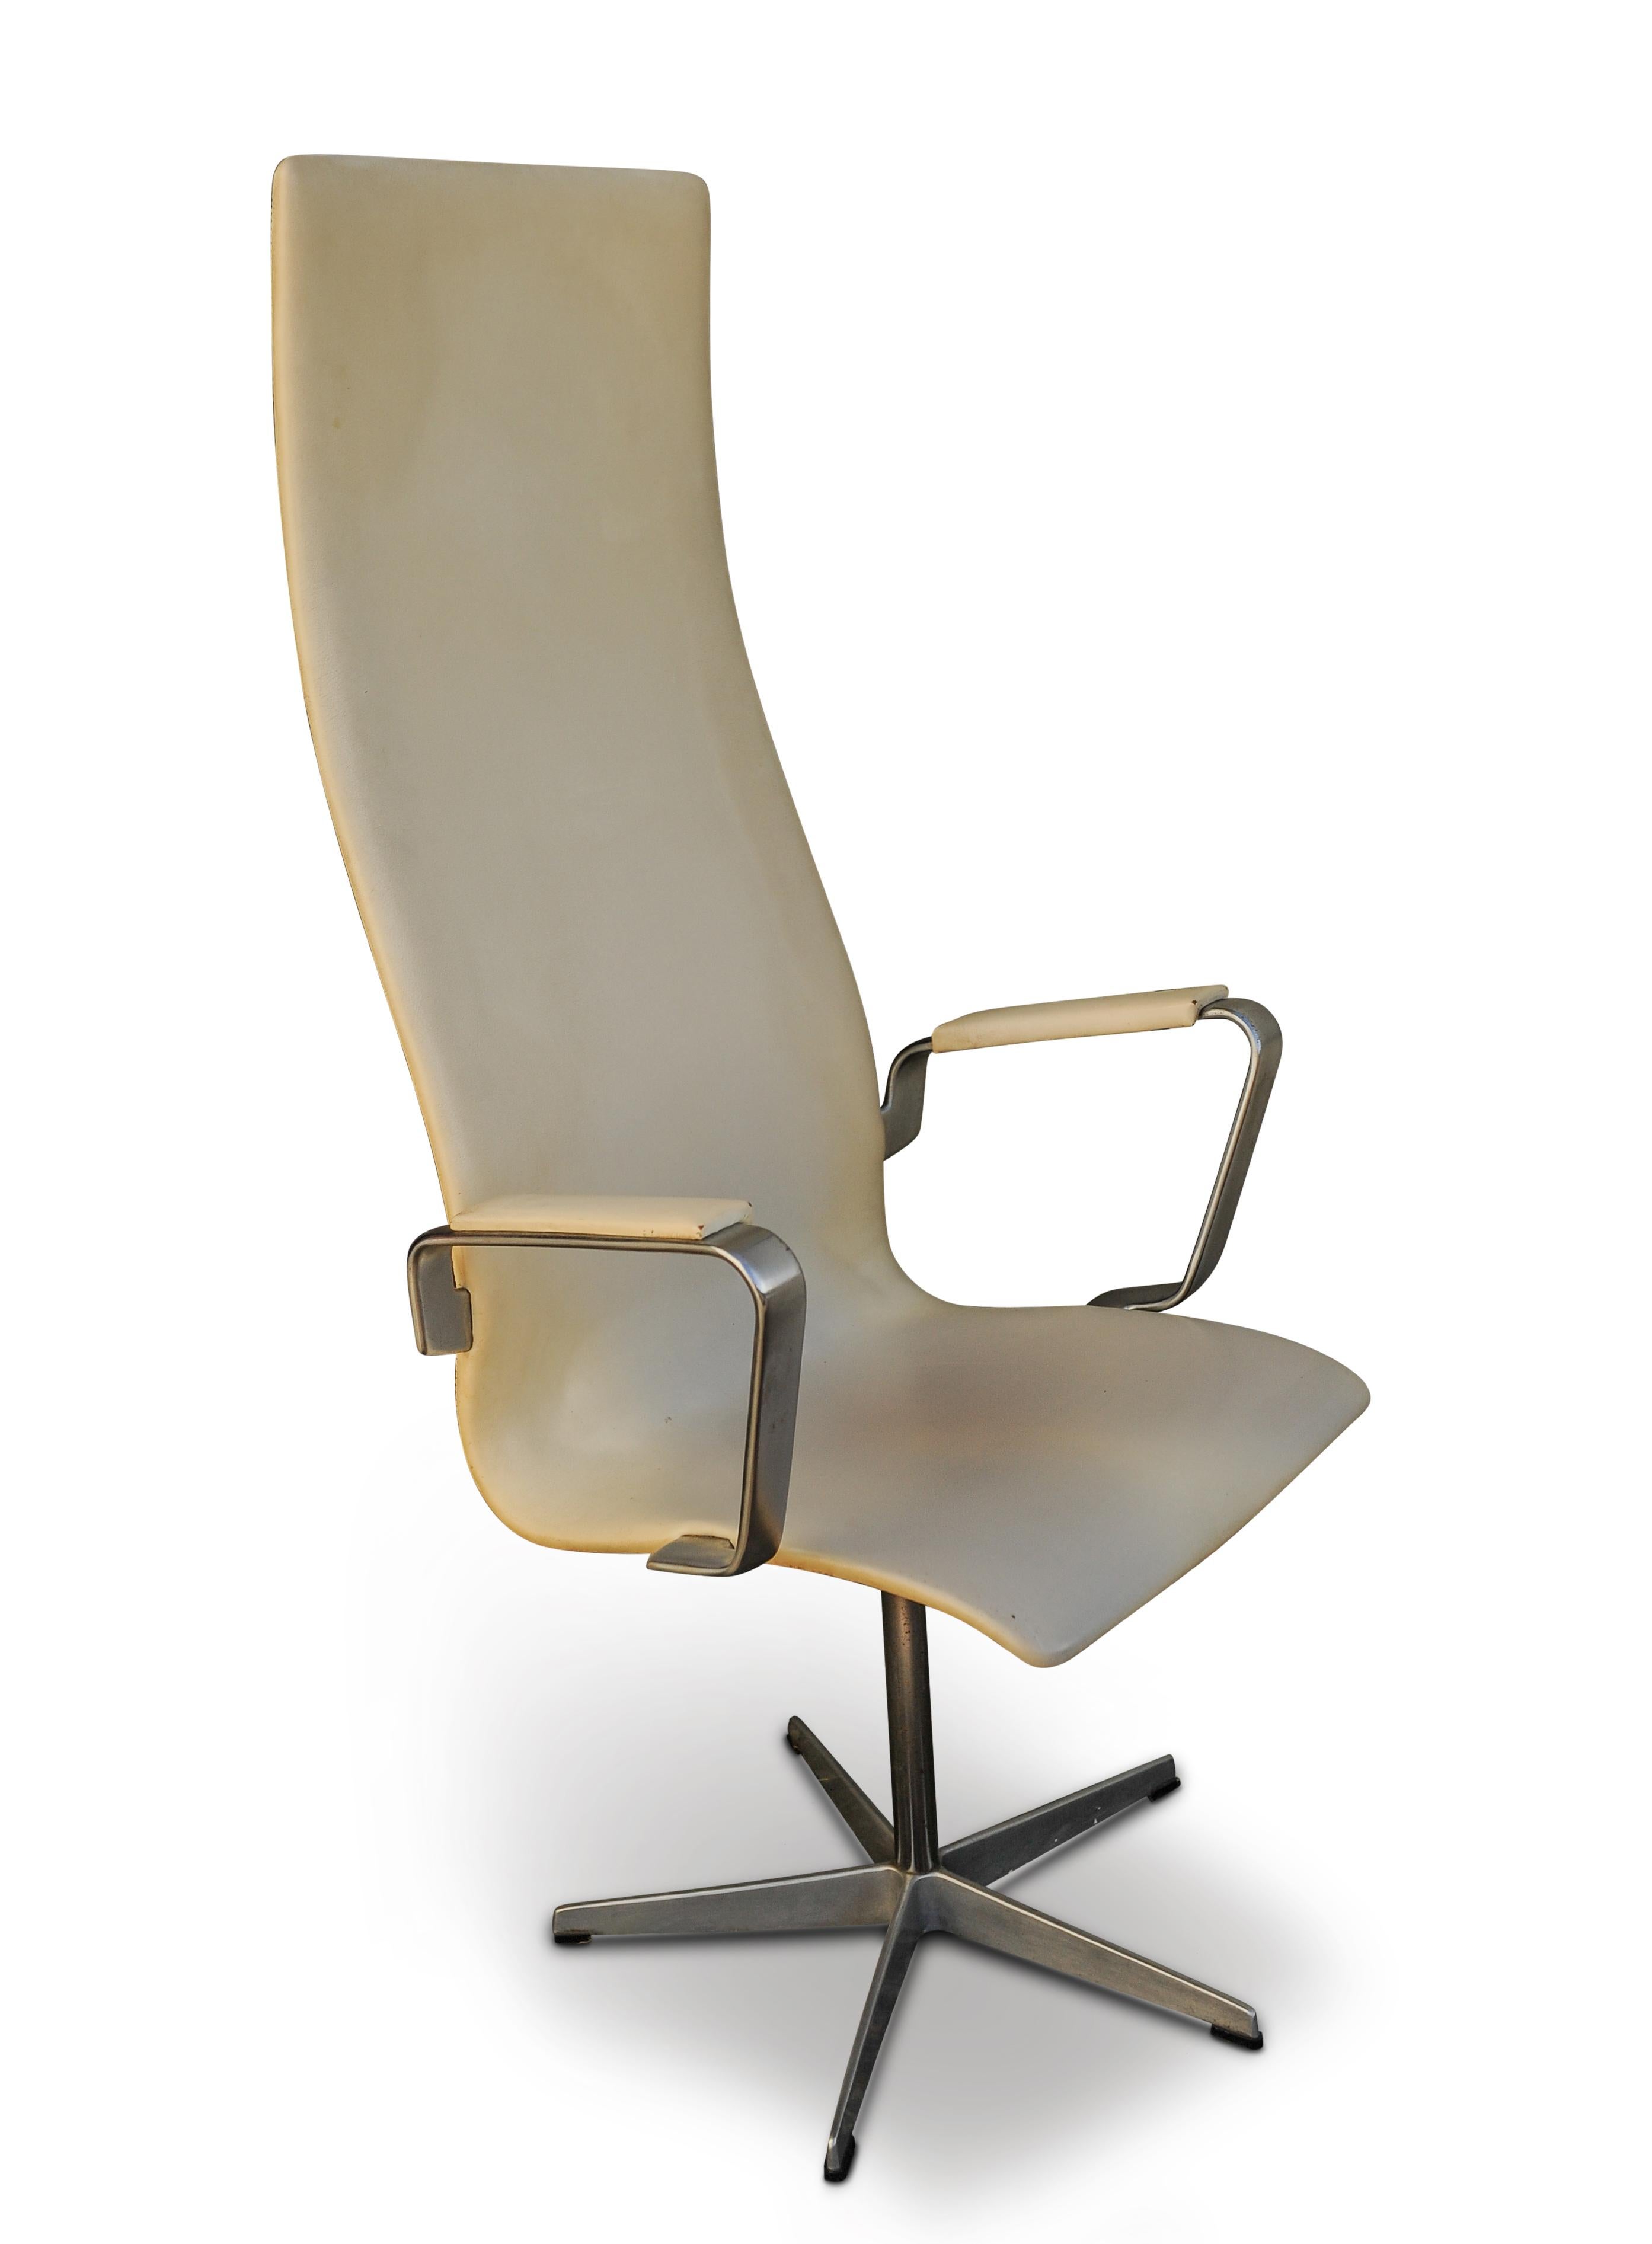 Design original d'Arne Jacobsen (1902-1971) pour Fritz Hansen.
Fauteuil Oxford pivotant d'origine en cuir blanc cassé et aluminium brossé, rembourré de cuir crème, reposant sur une base à cinq branches, étiqueté en dessous.

Estampillé et